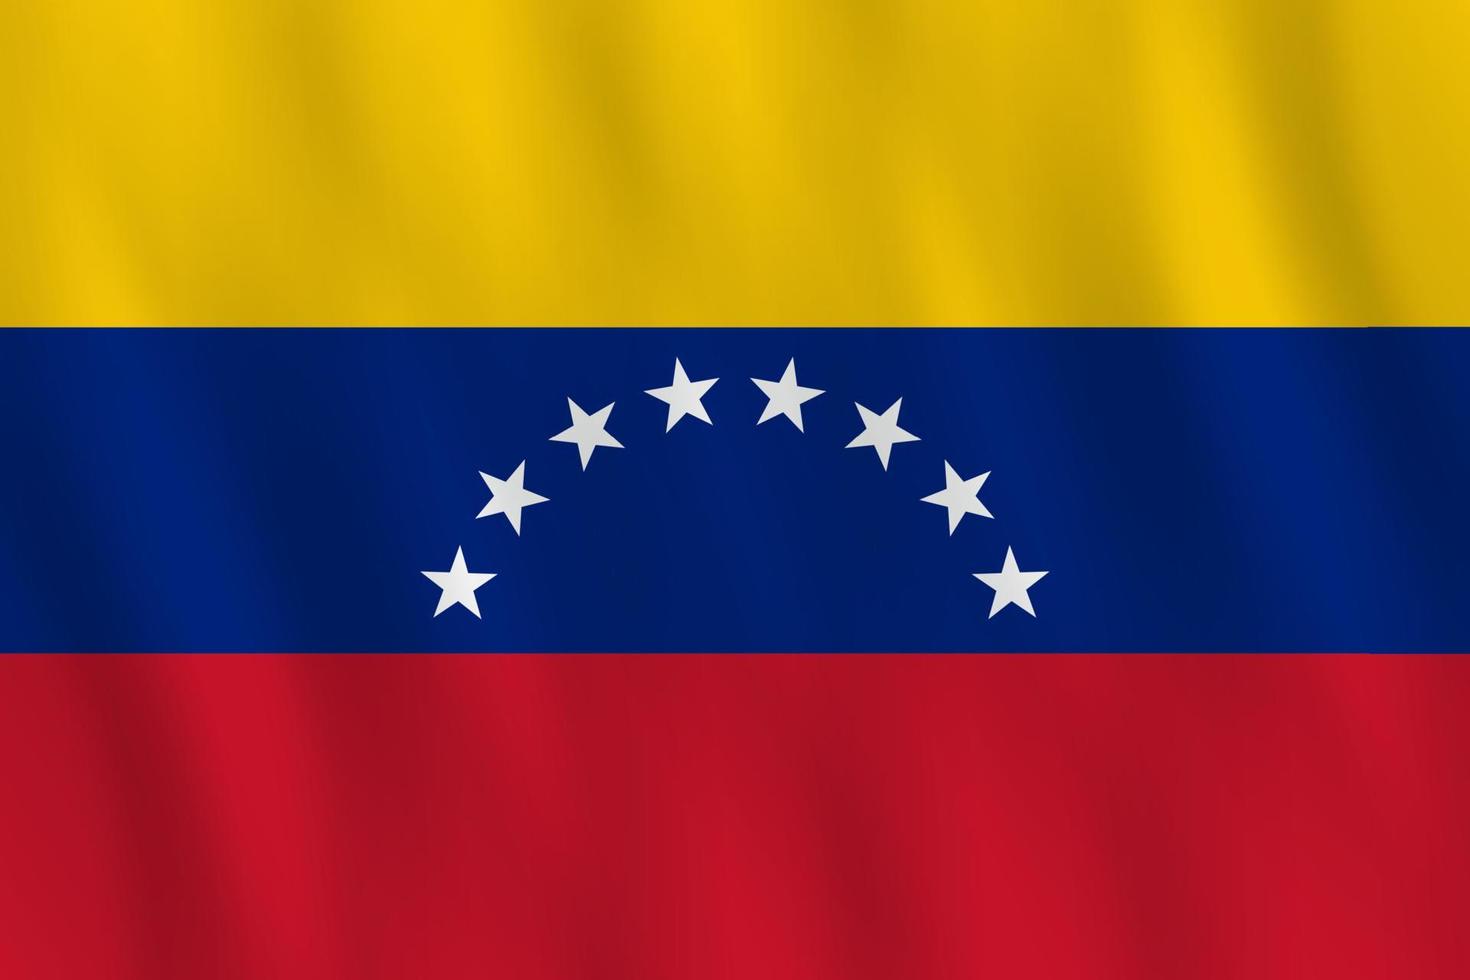 vlag van venezuela met golvend effect, officiële verhouding. vector